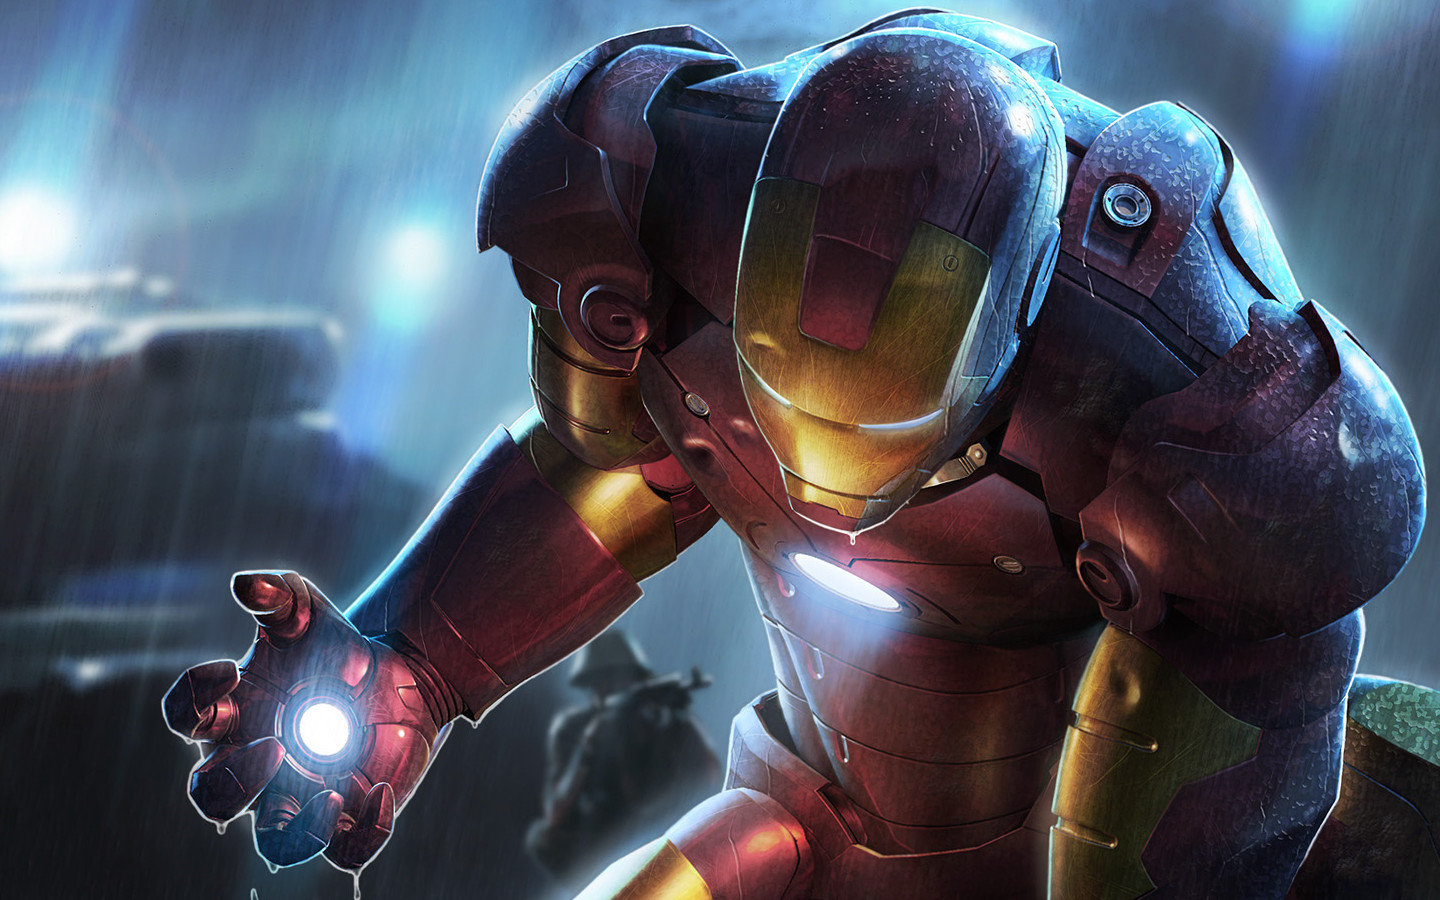 fondo de pantalla de iron man,juego de acción y aventura,personaje de ficción,superhéroe,hombre de acero,cg artwork